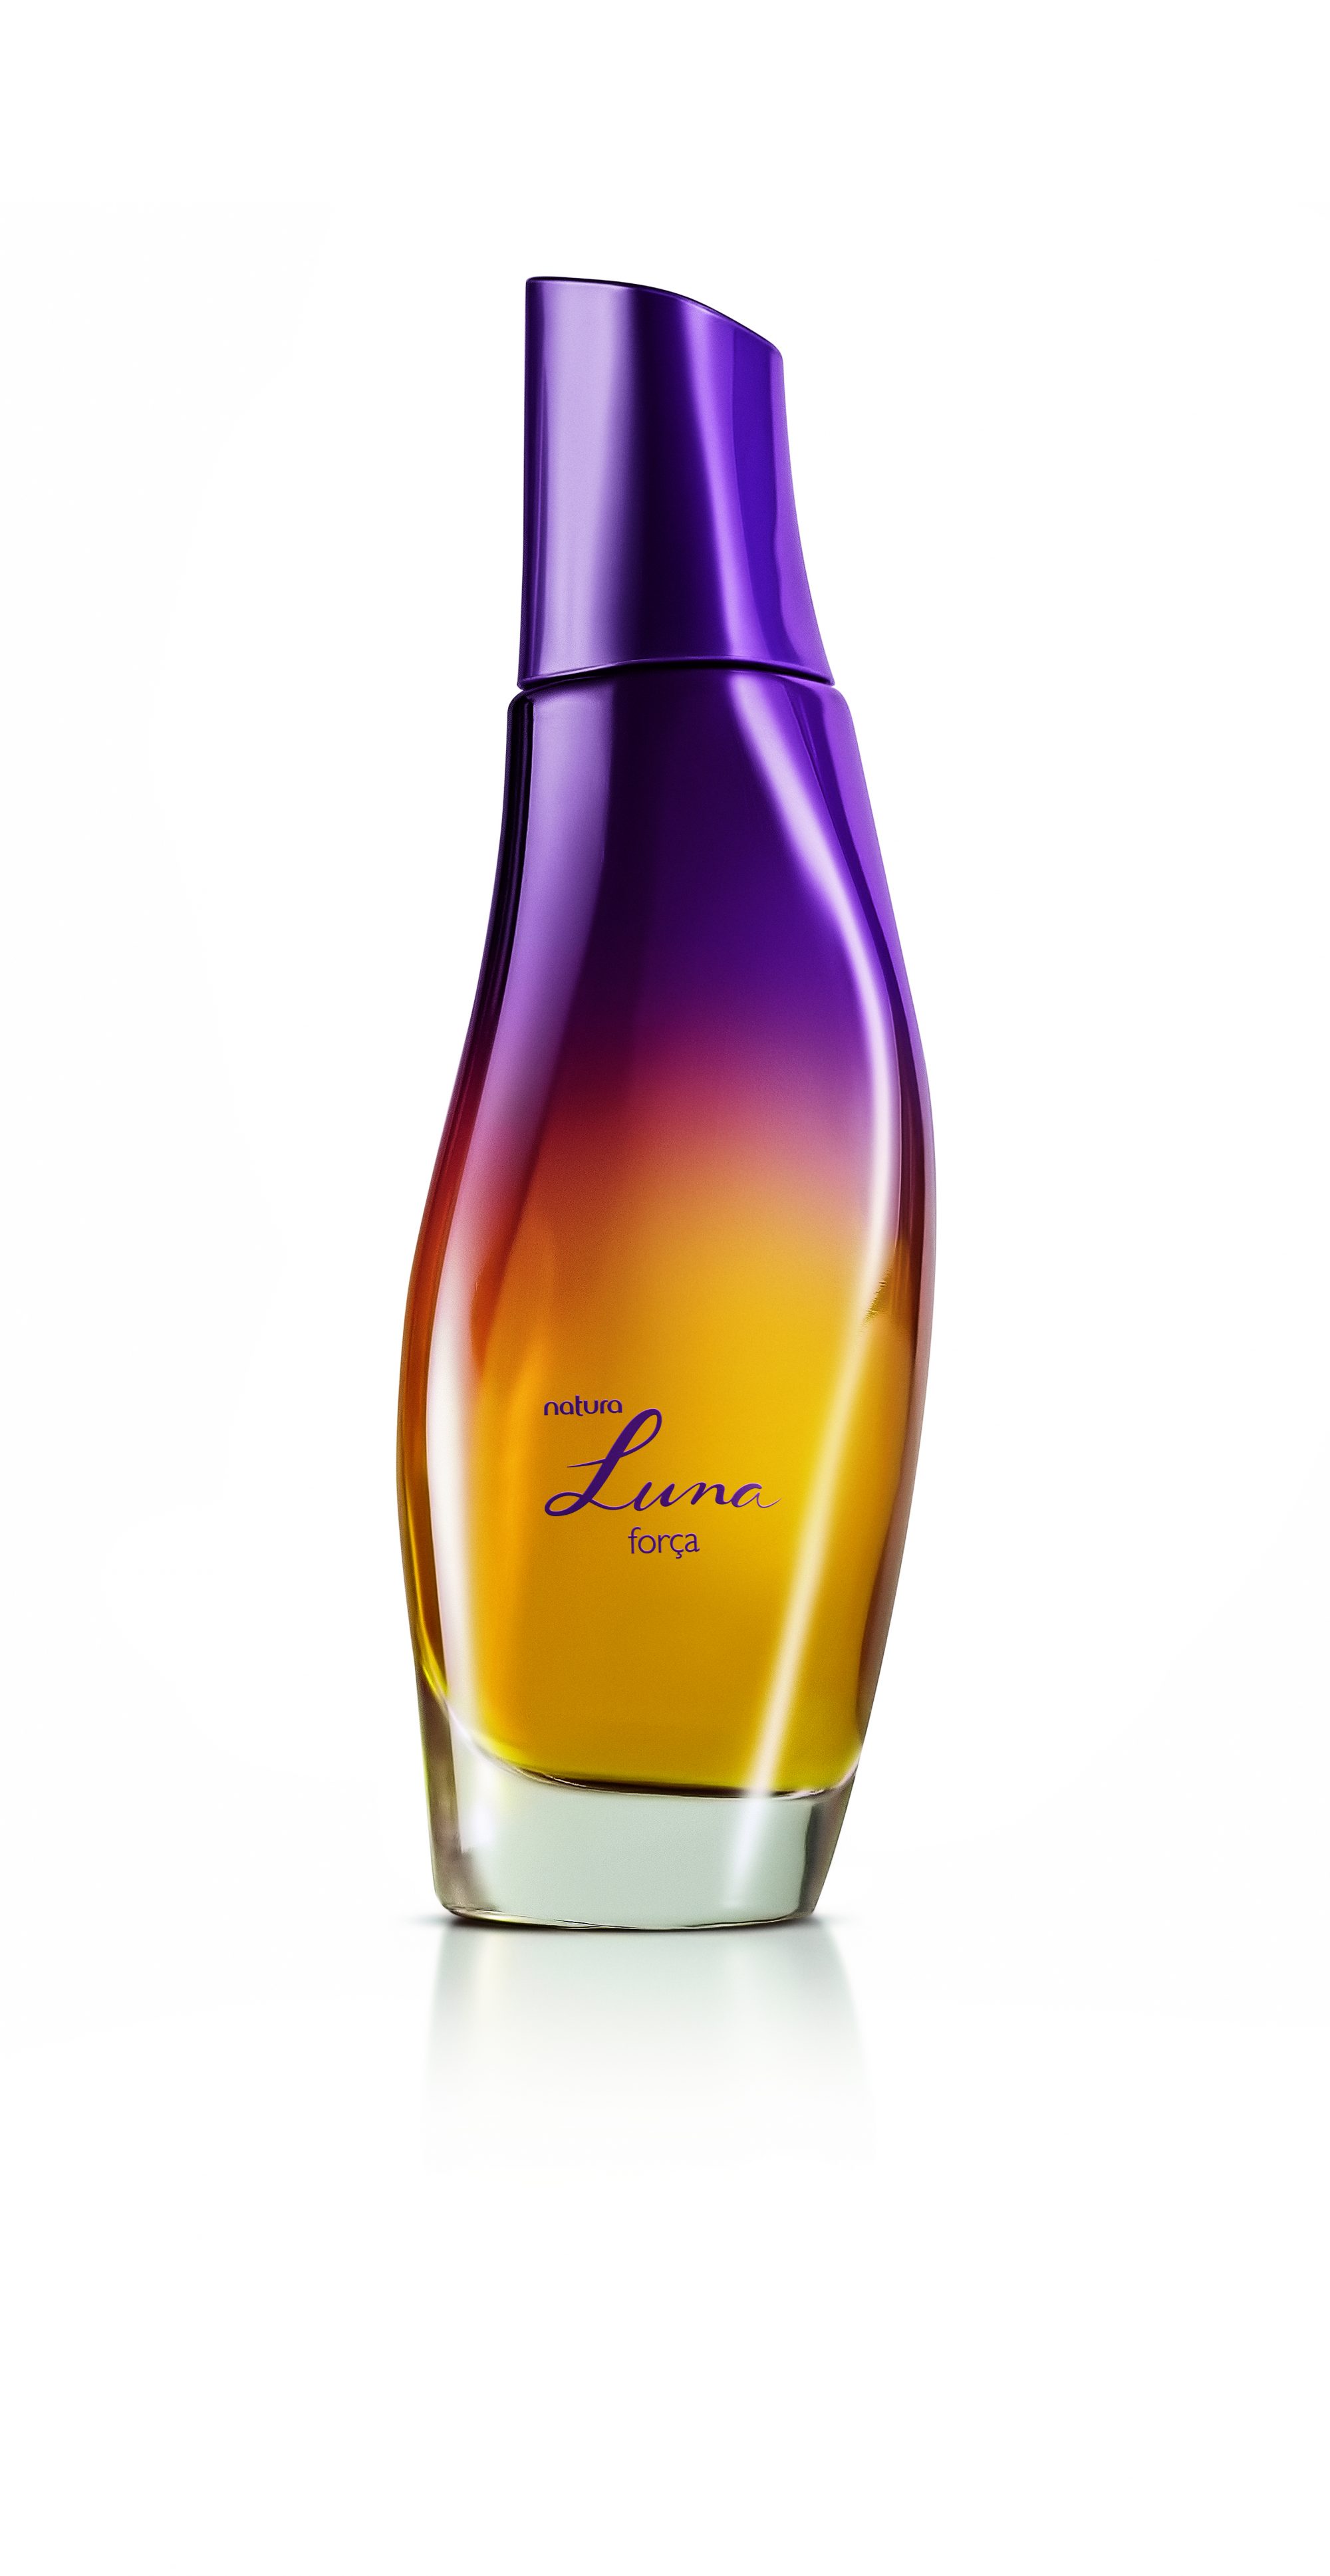 Luna Força é a nova fragrância da Natura, a Casa de Perfumaria do Brasil